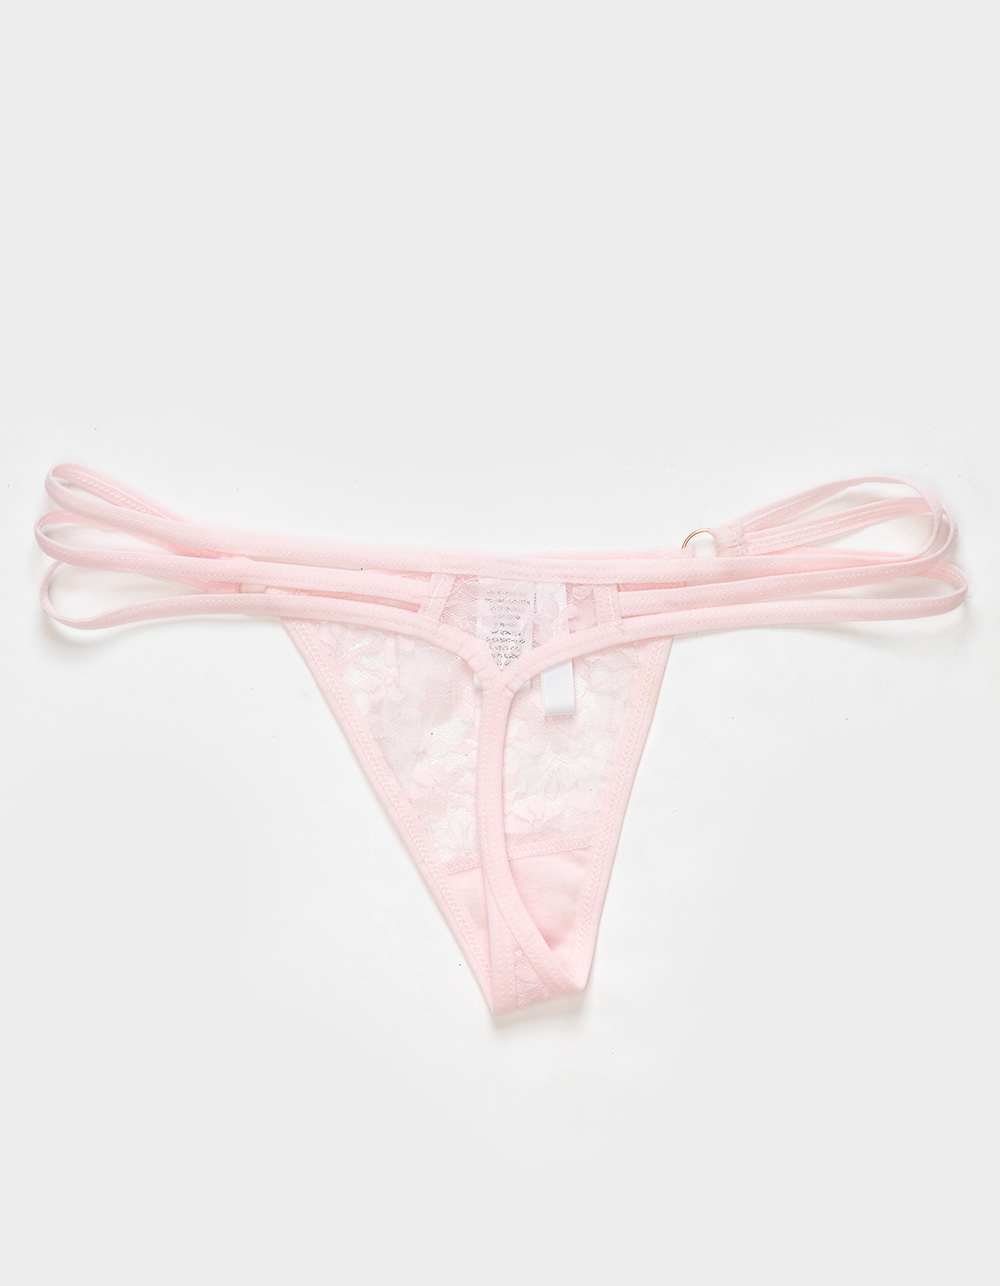  Victoria's Secret The Lacie Thong Panty Set de 3, Cruz